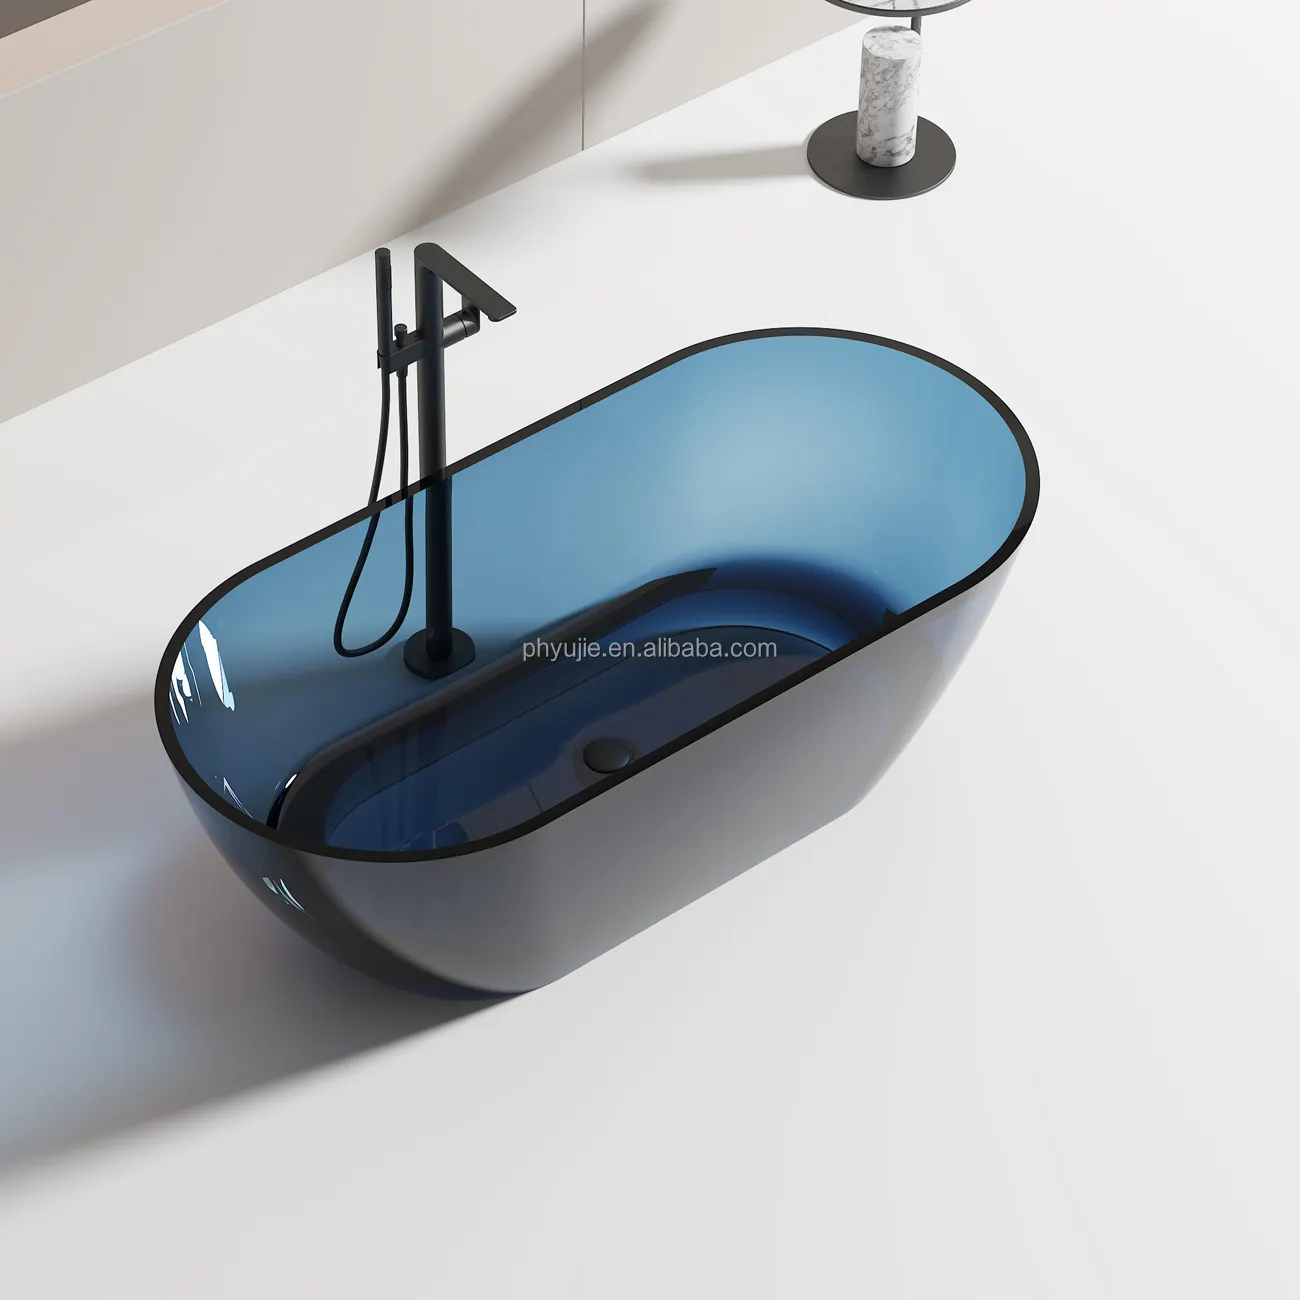 스톤 수지 새로운 디자인 다채로운 투명 크리스탈 수지 독립형 욕조 담그기 욕조 호텔 클래식 욕조